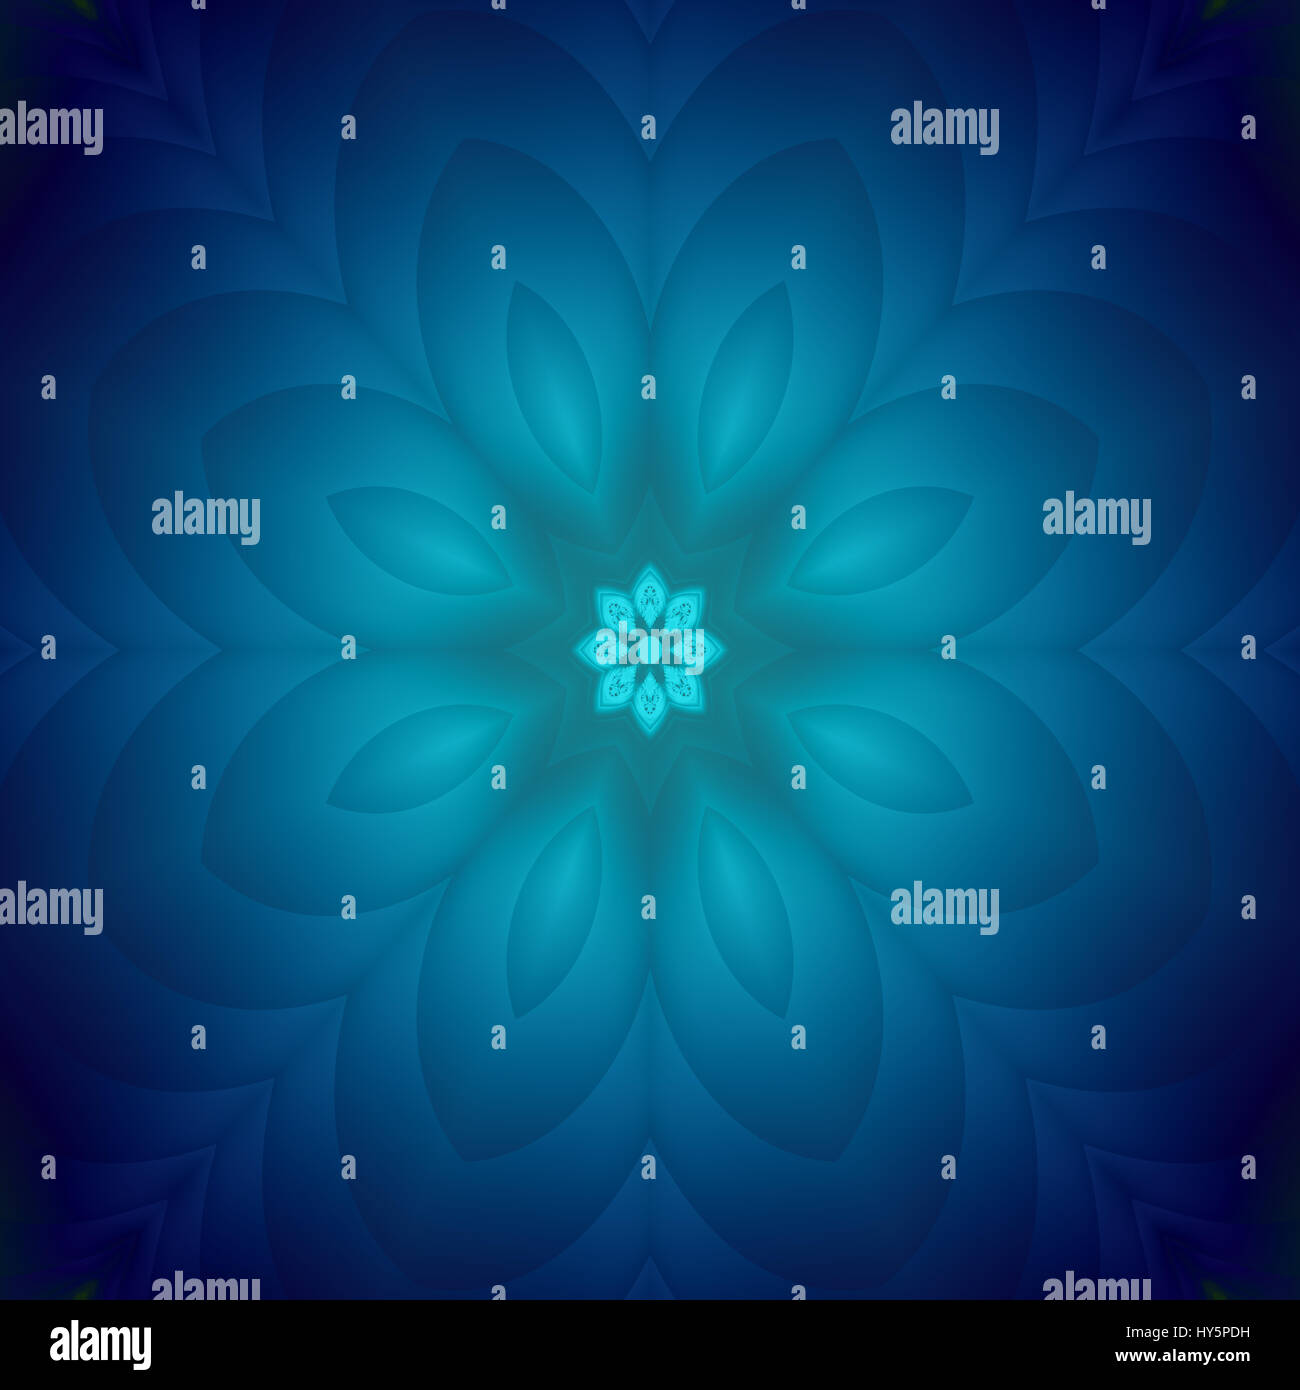 Splendidi royal blu fiore effetto digitale immagine frattale con concentriche forme di petalo in formato quadrato Foto Stock